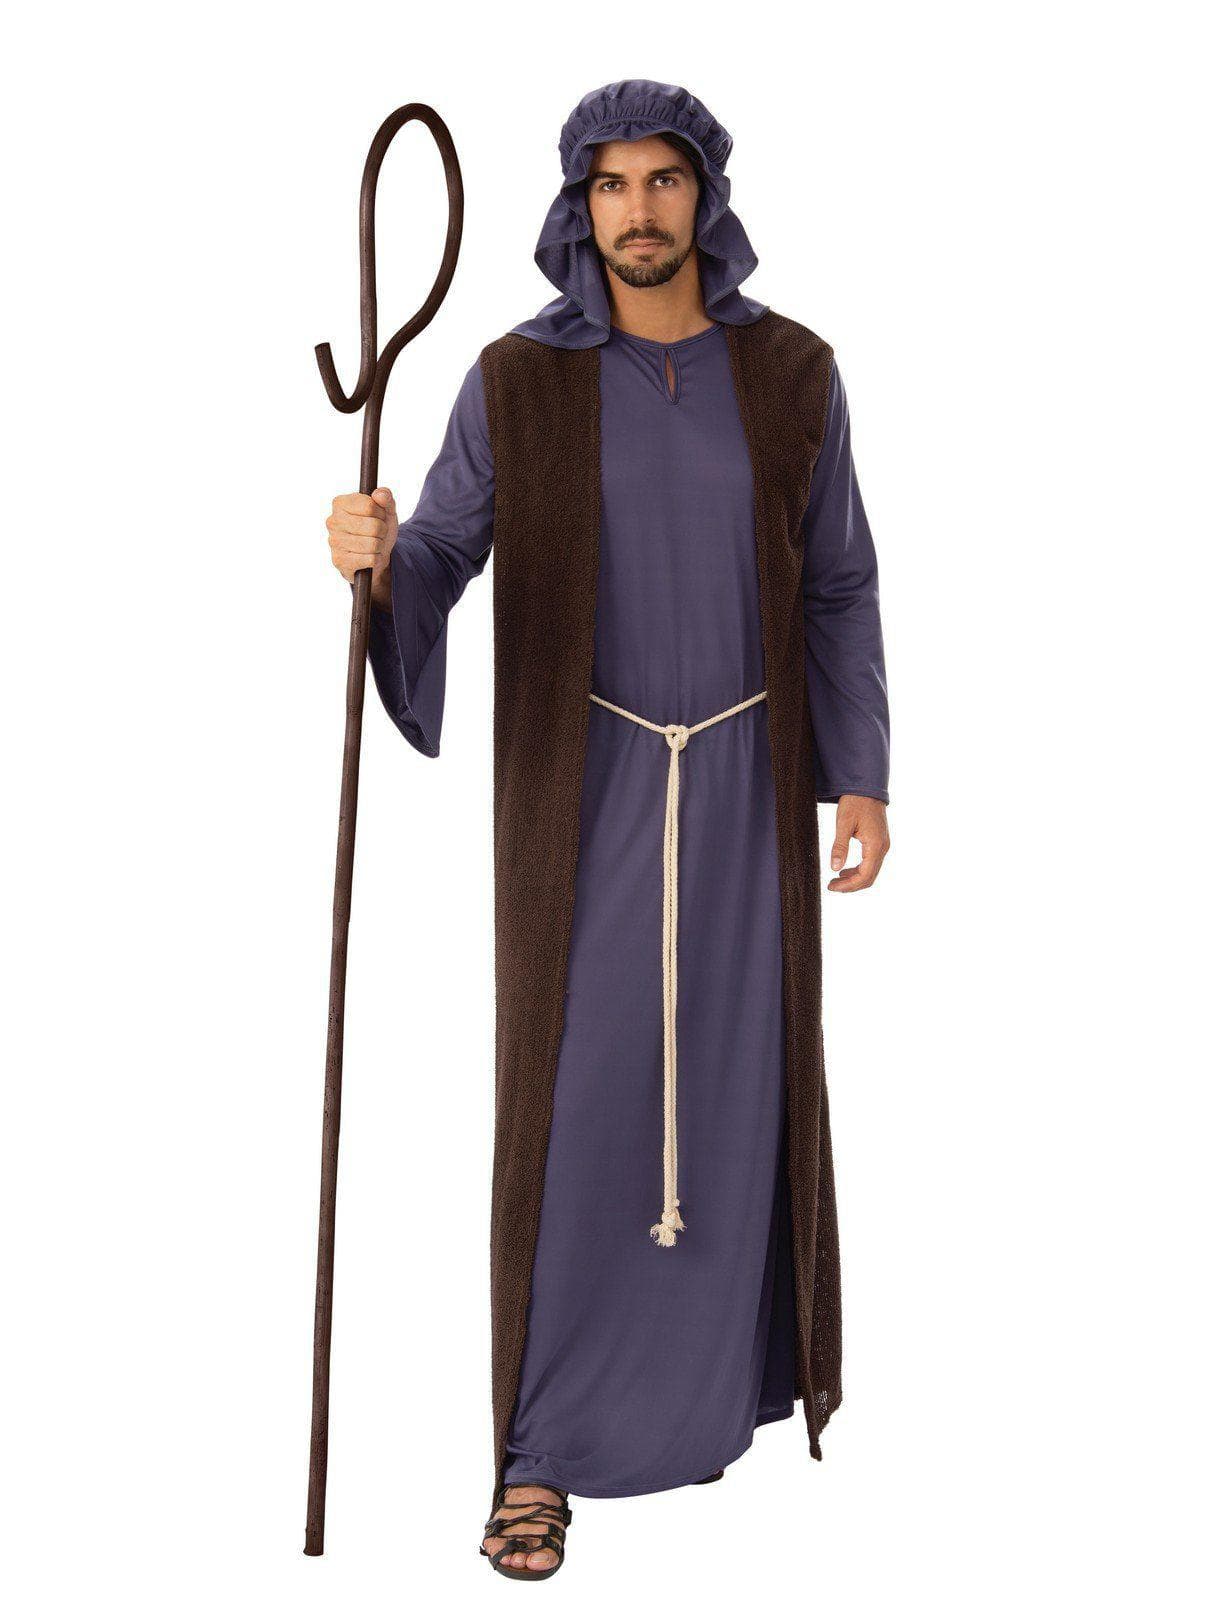 joseph father of jesus costume